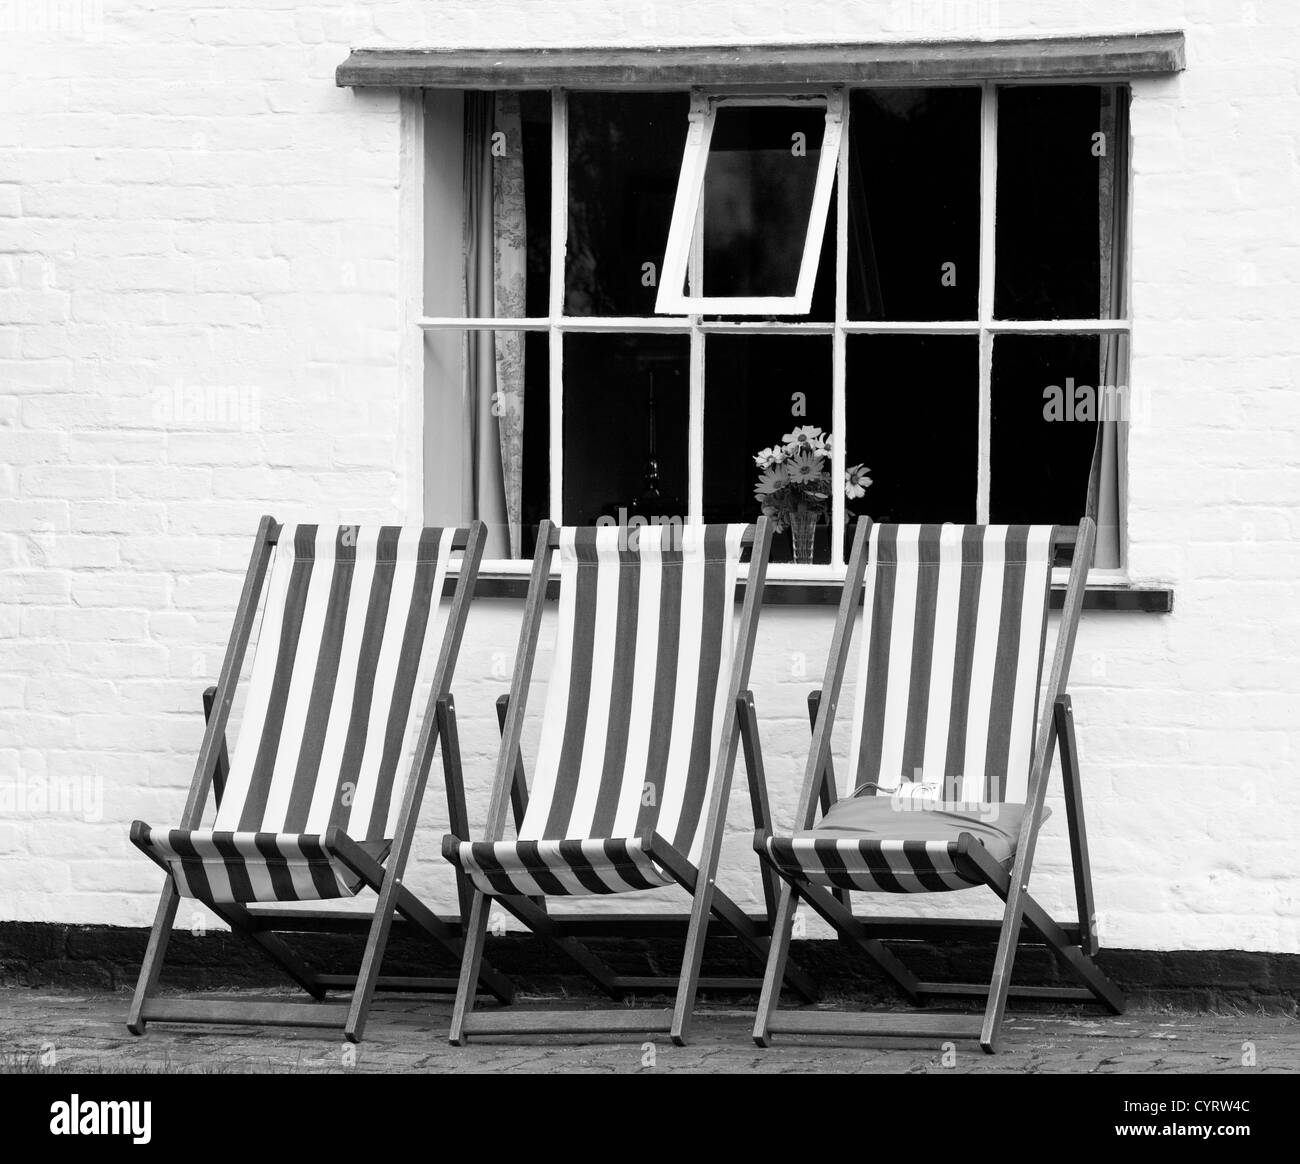 Chaises longues à l'extérieur de la fenêtre d'un chalet en noir et blanc, England, UK Banque D'Images